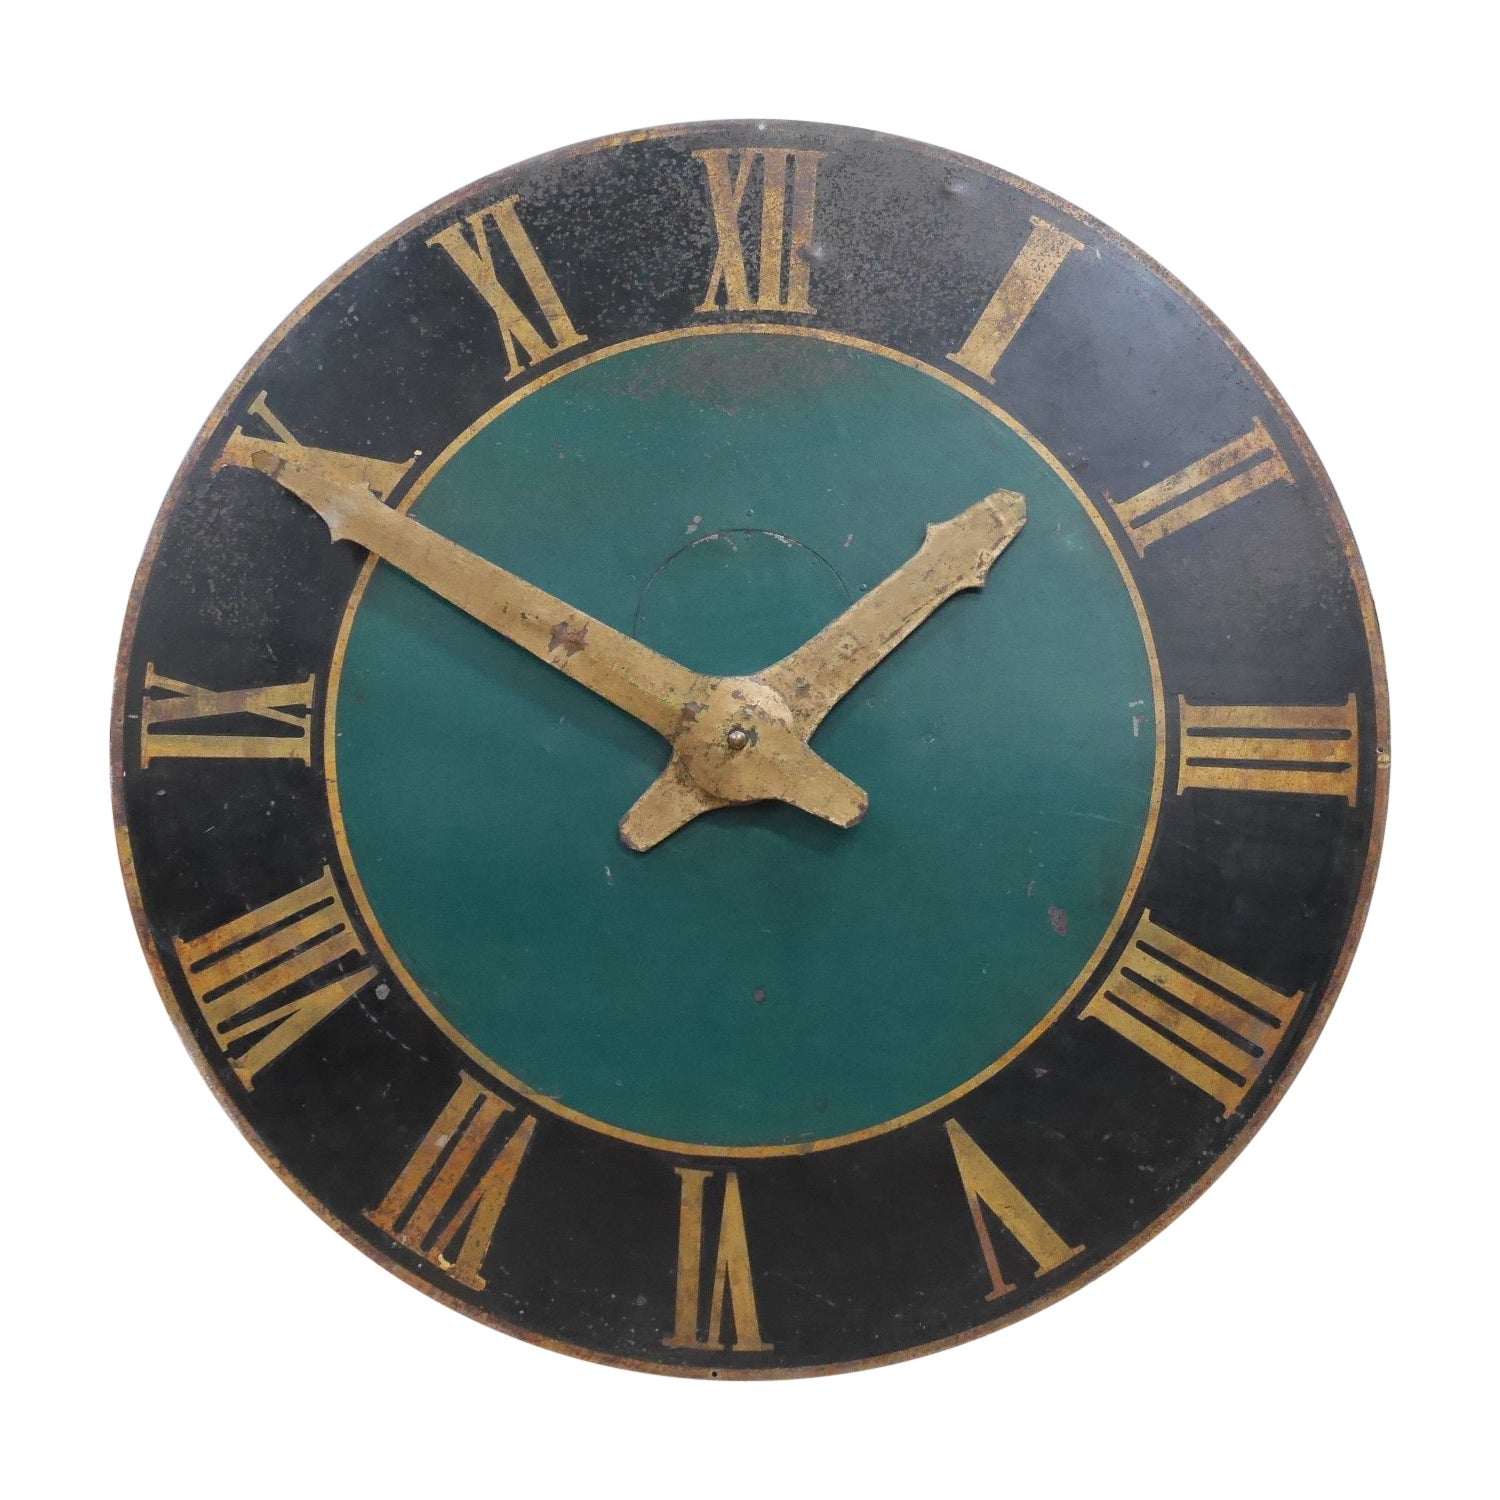 Grand visage d'horloge de tour parisienne dans sa peinture d'origine